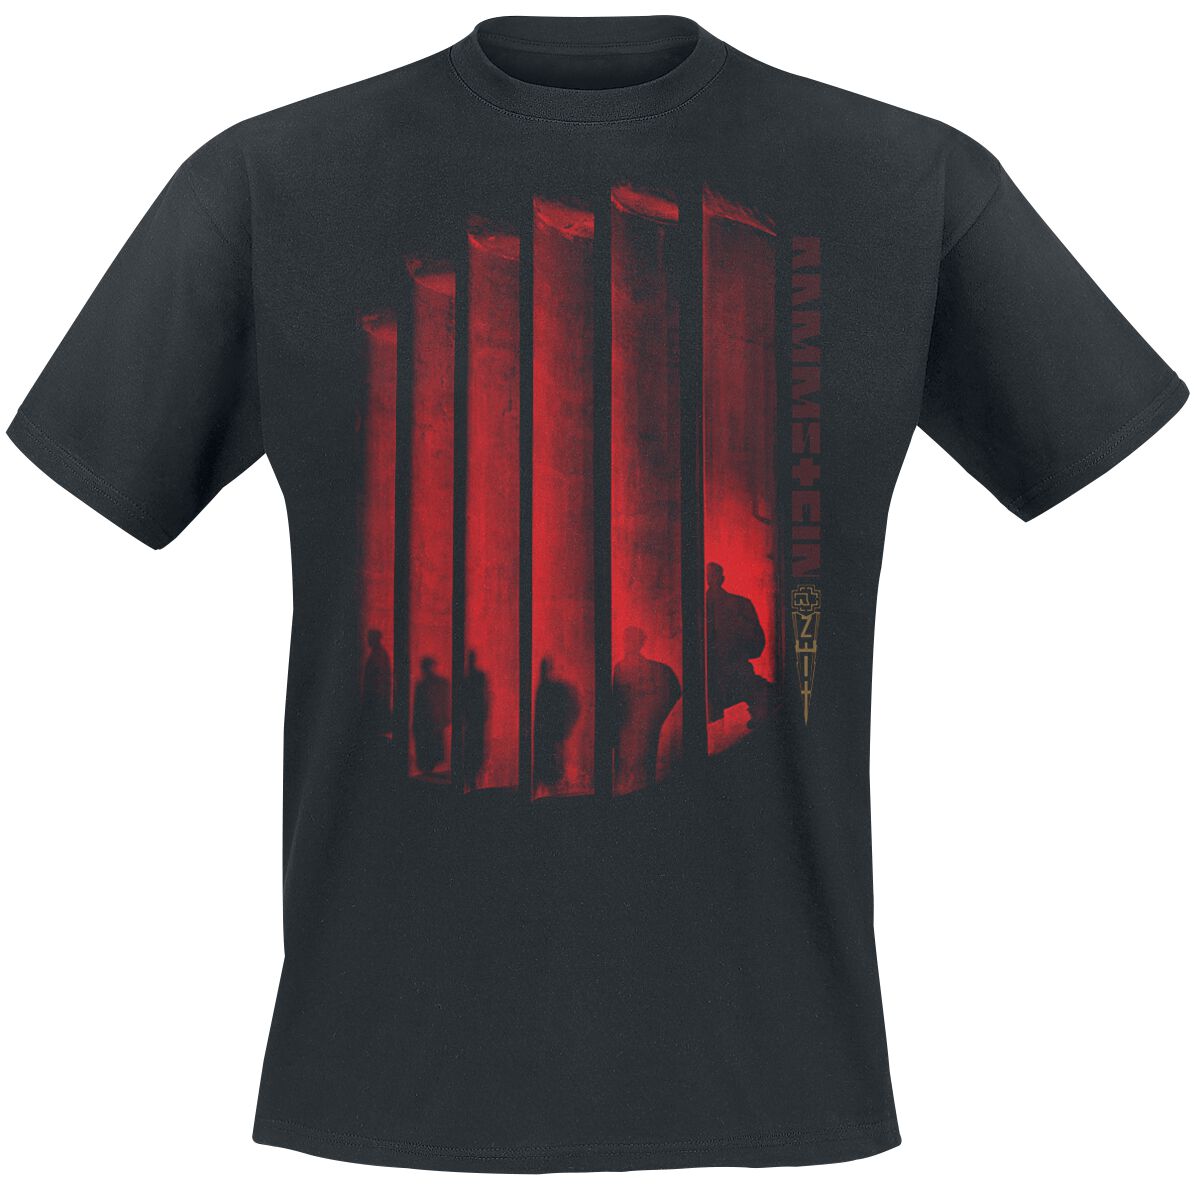 Rammstein T-Shirt - Schatten Ohne Licht - S bis 5XL - für Männer - Größe M - schwarz  - Lizenziertes Merchandise!